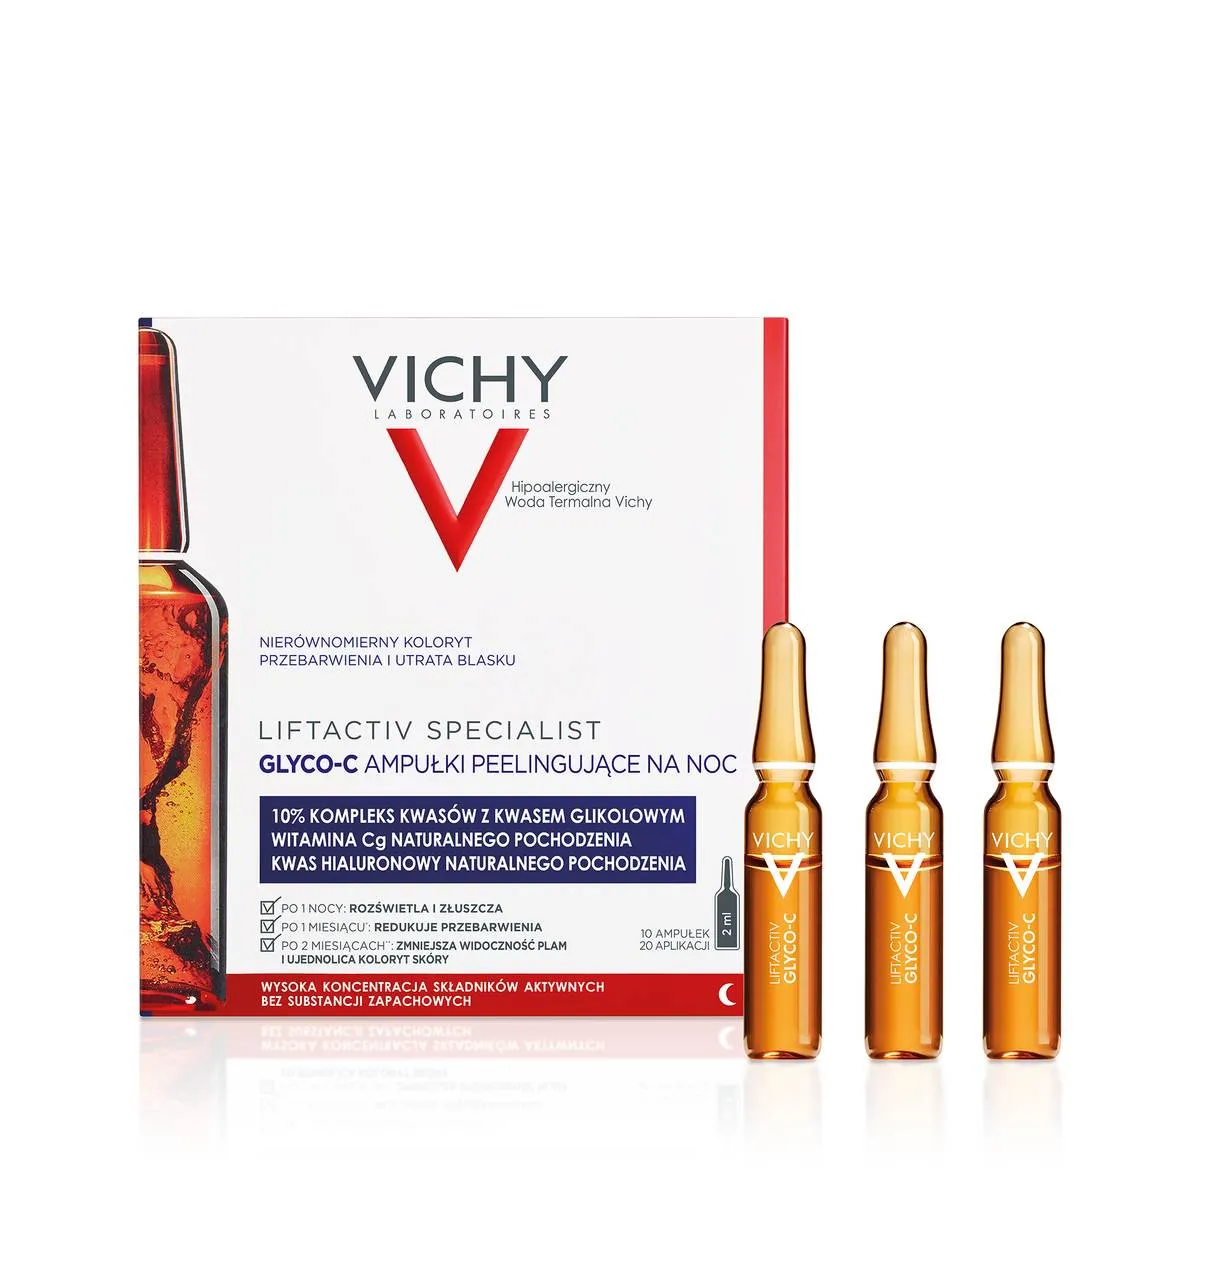 Vichy Liftactiv Glyco-C, skoncentrowana kuracja peelingująca na noc, ampułki, 10 x 2 ml 